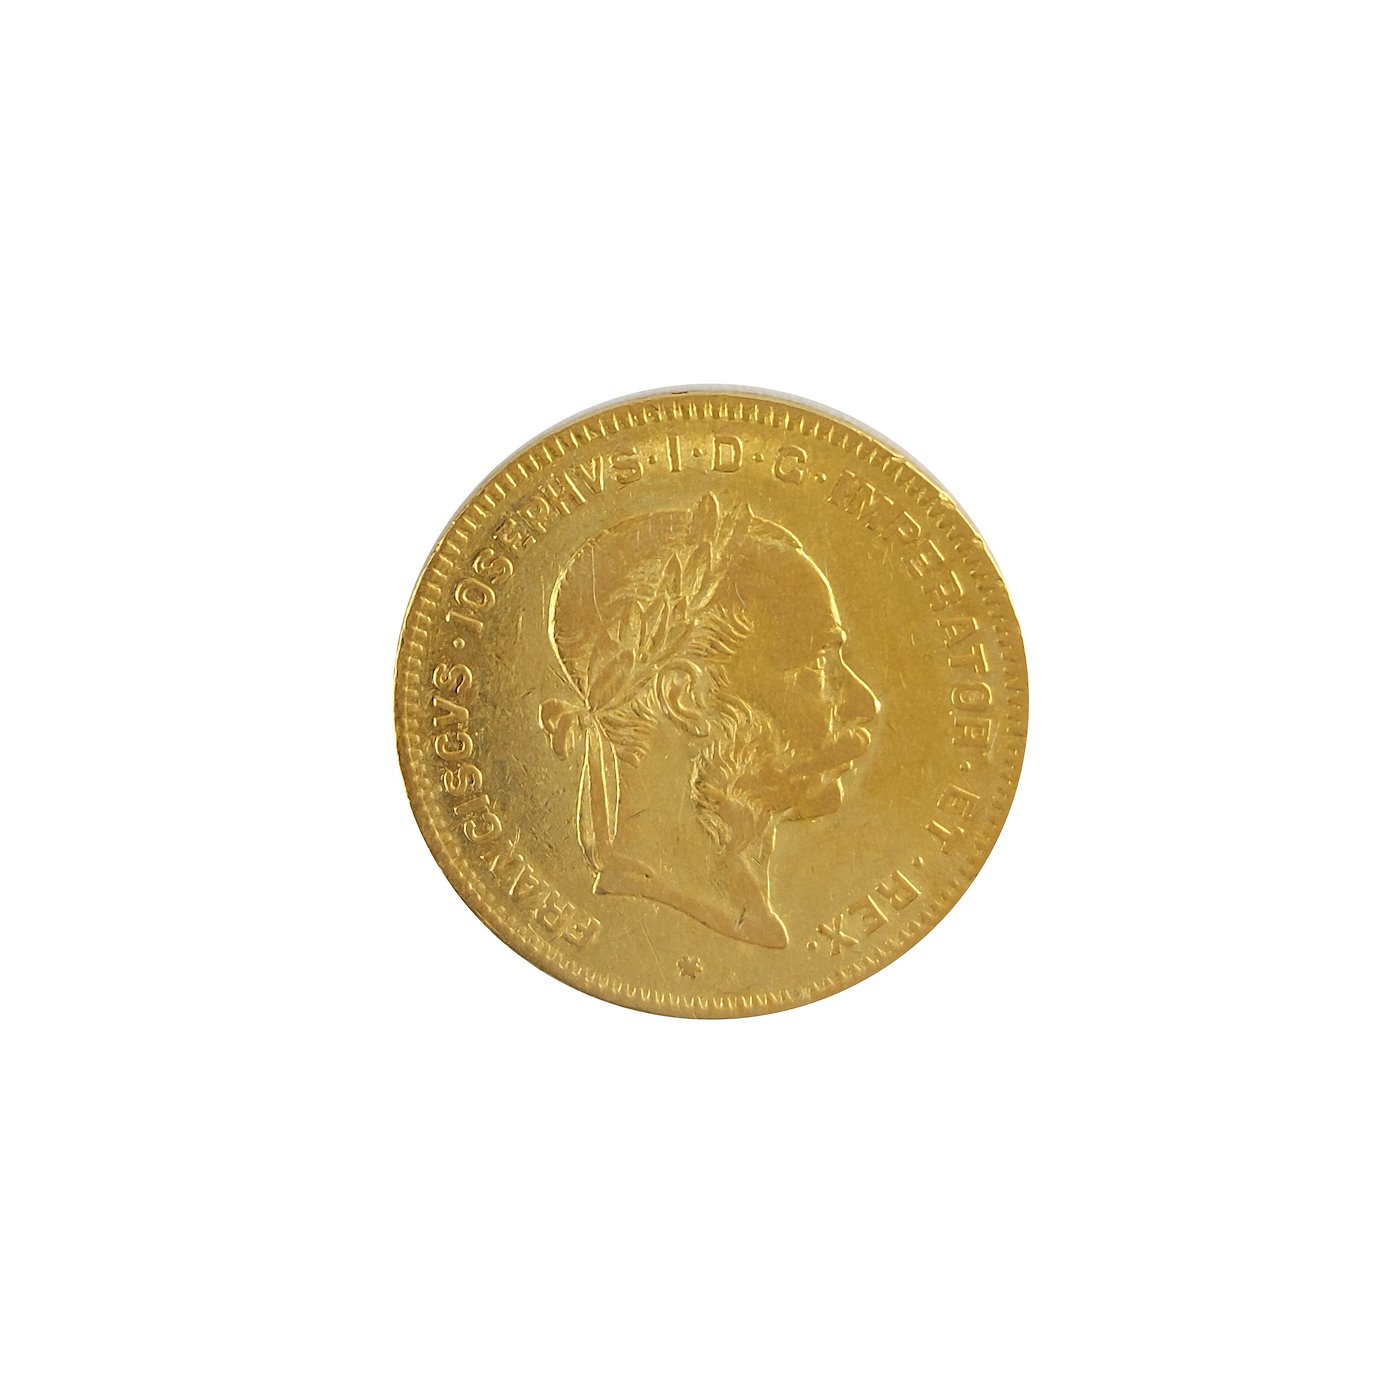 .. - Rakousko Uhersko zlatý 4 zlatník / 10 frank 1885 rakouský